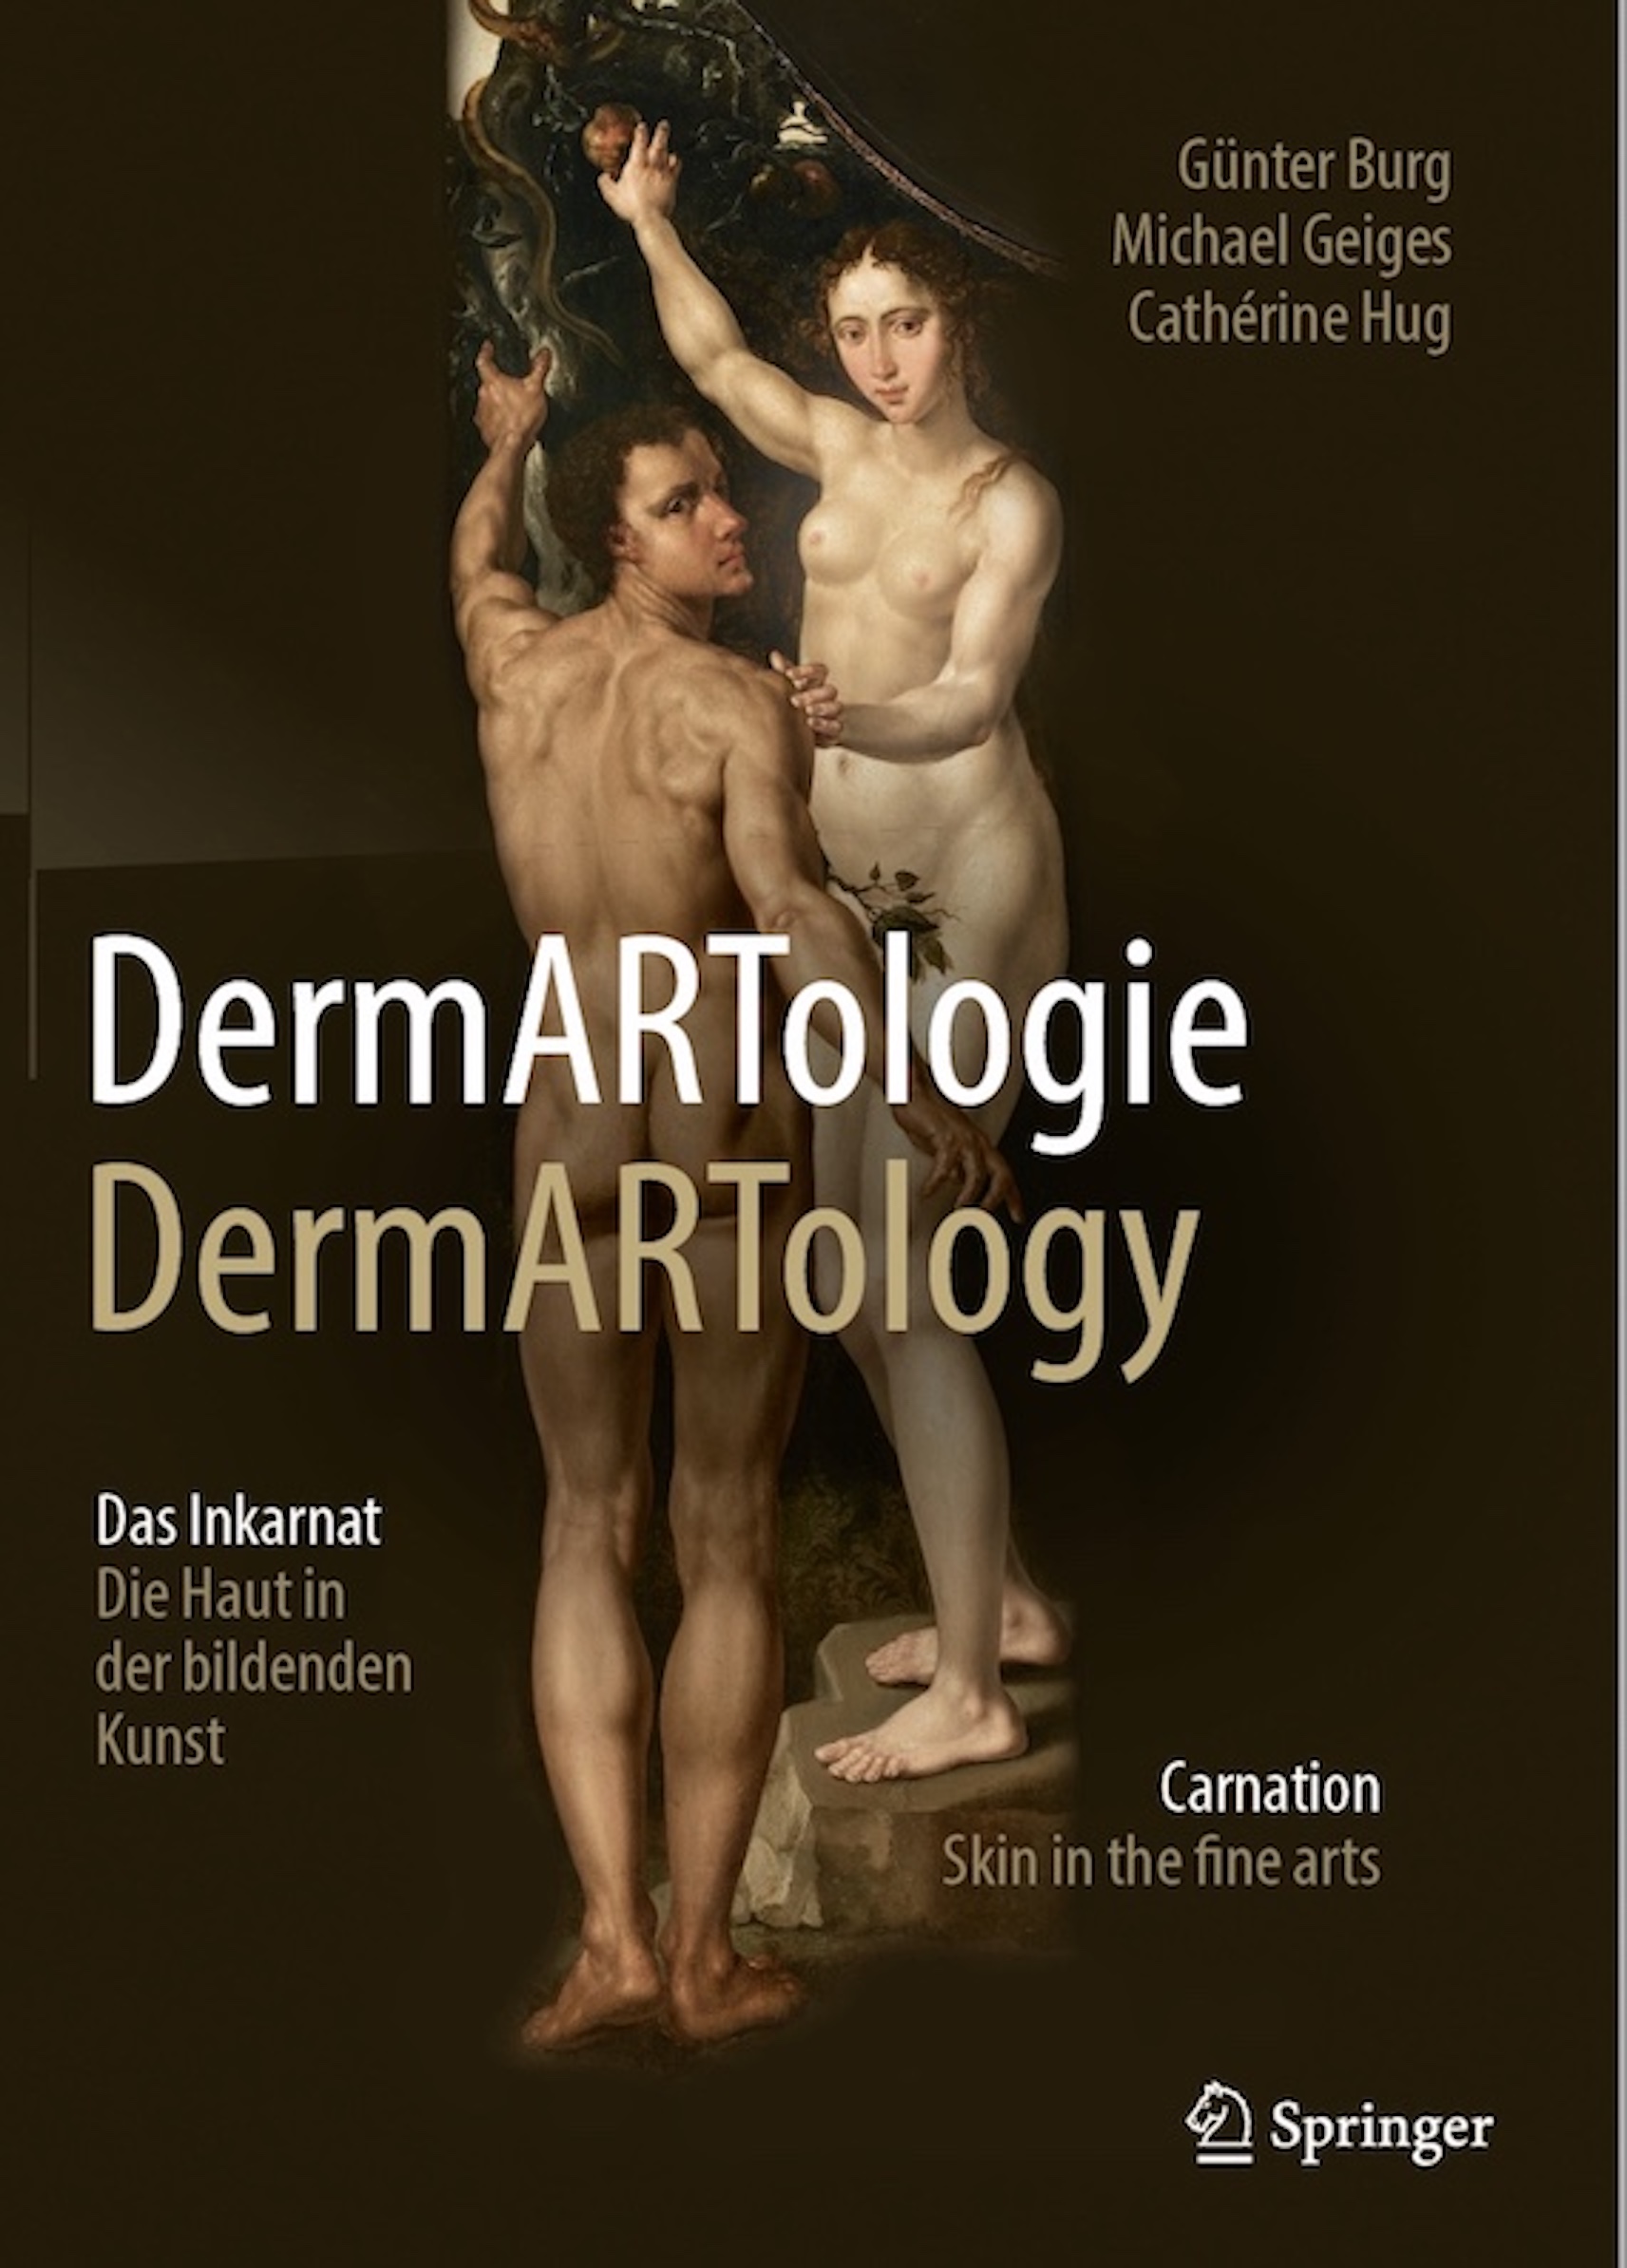 Titelbild des Buchs DermARTologie